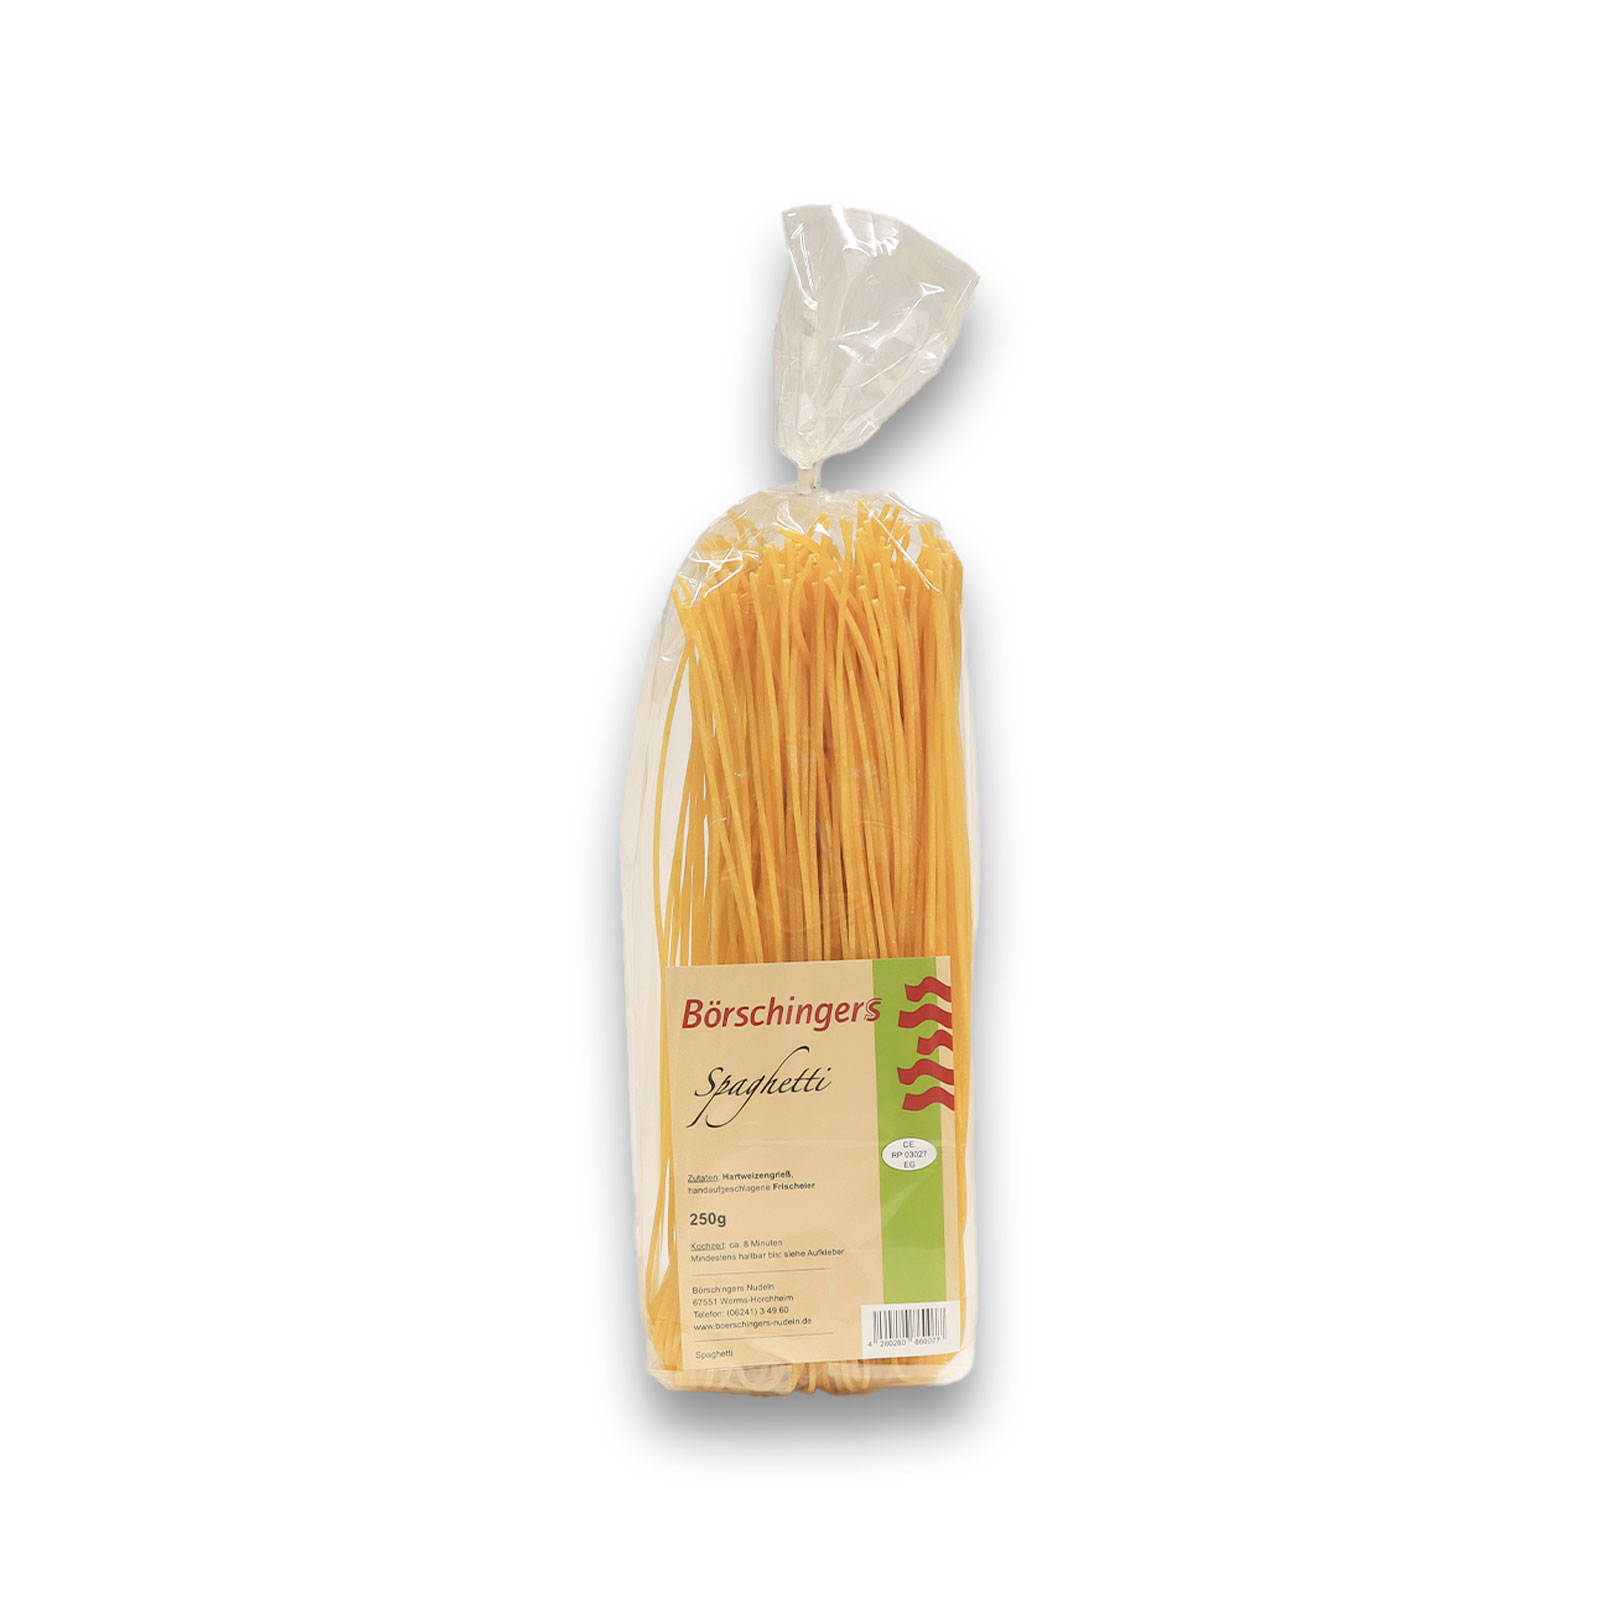 Spaghetti mit handaufgeschlagenen Frischeiern von Börschingers Nudeln.